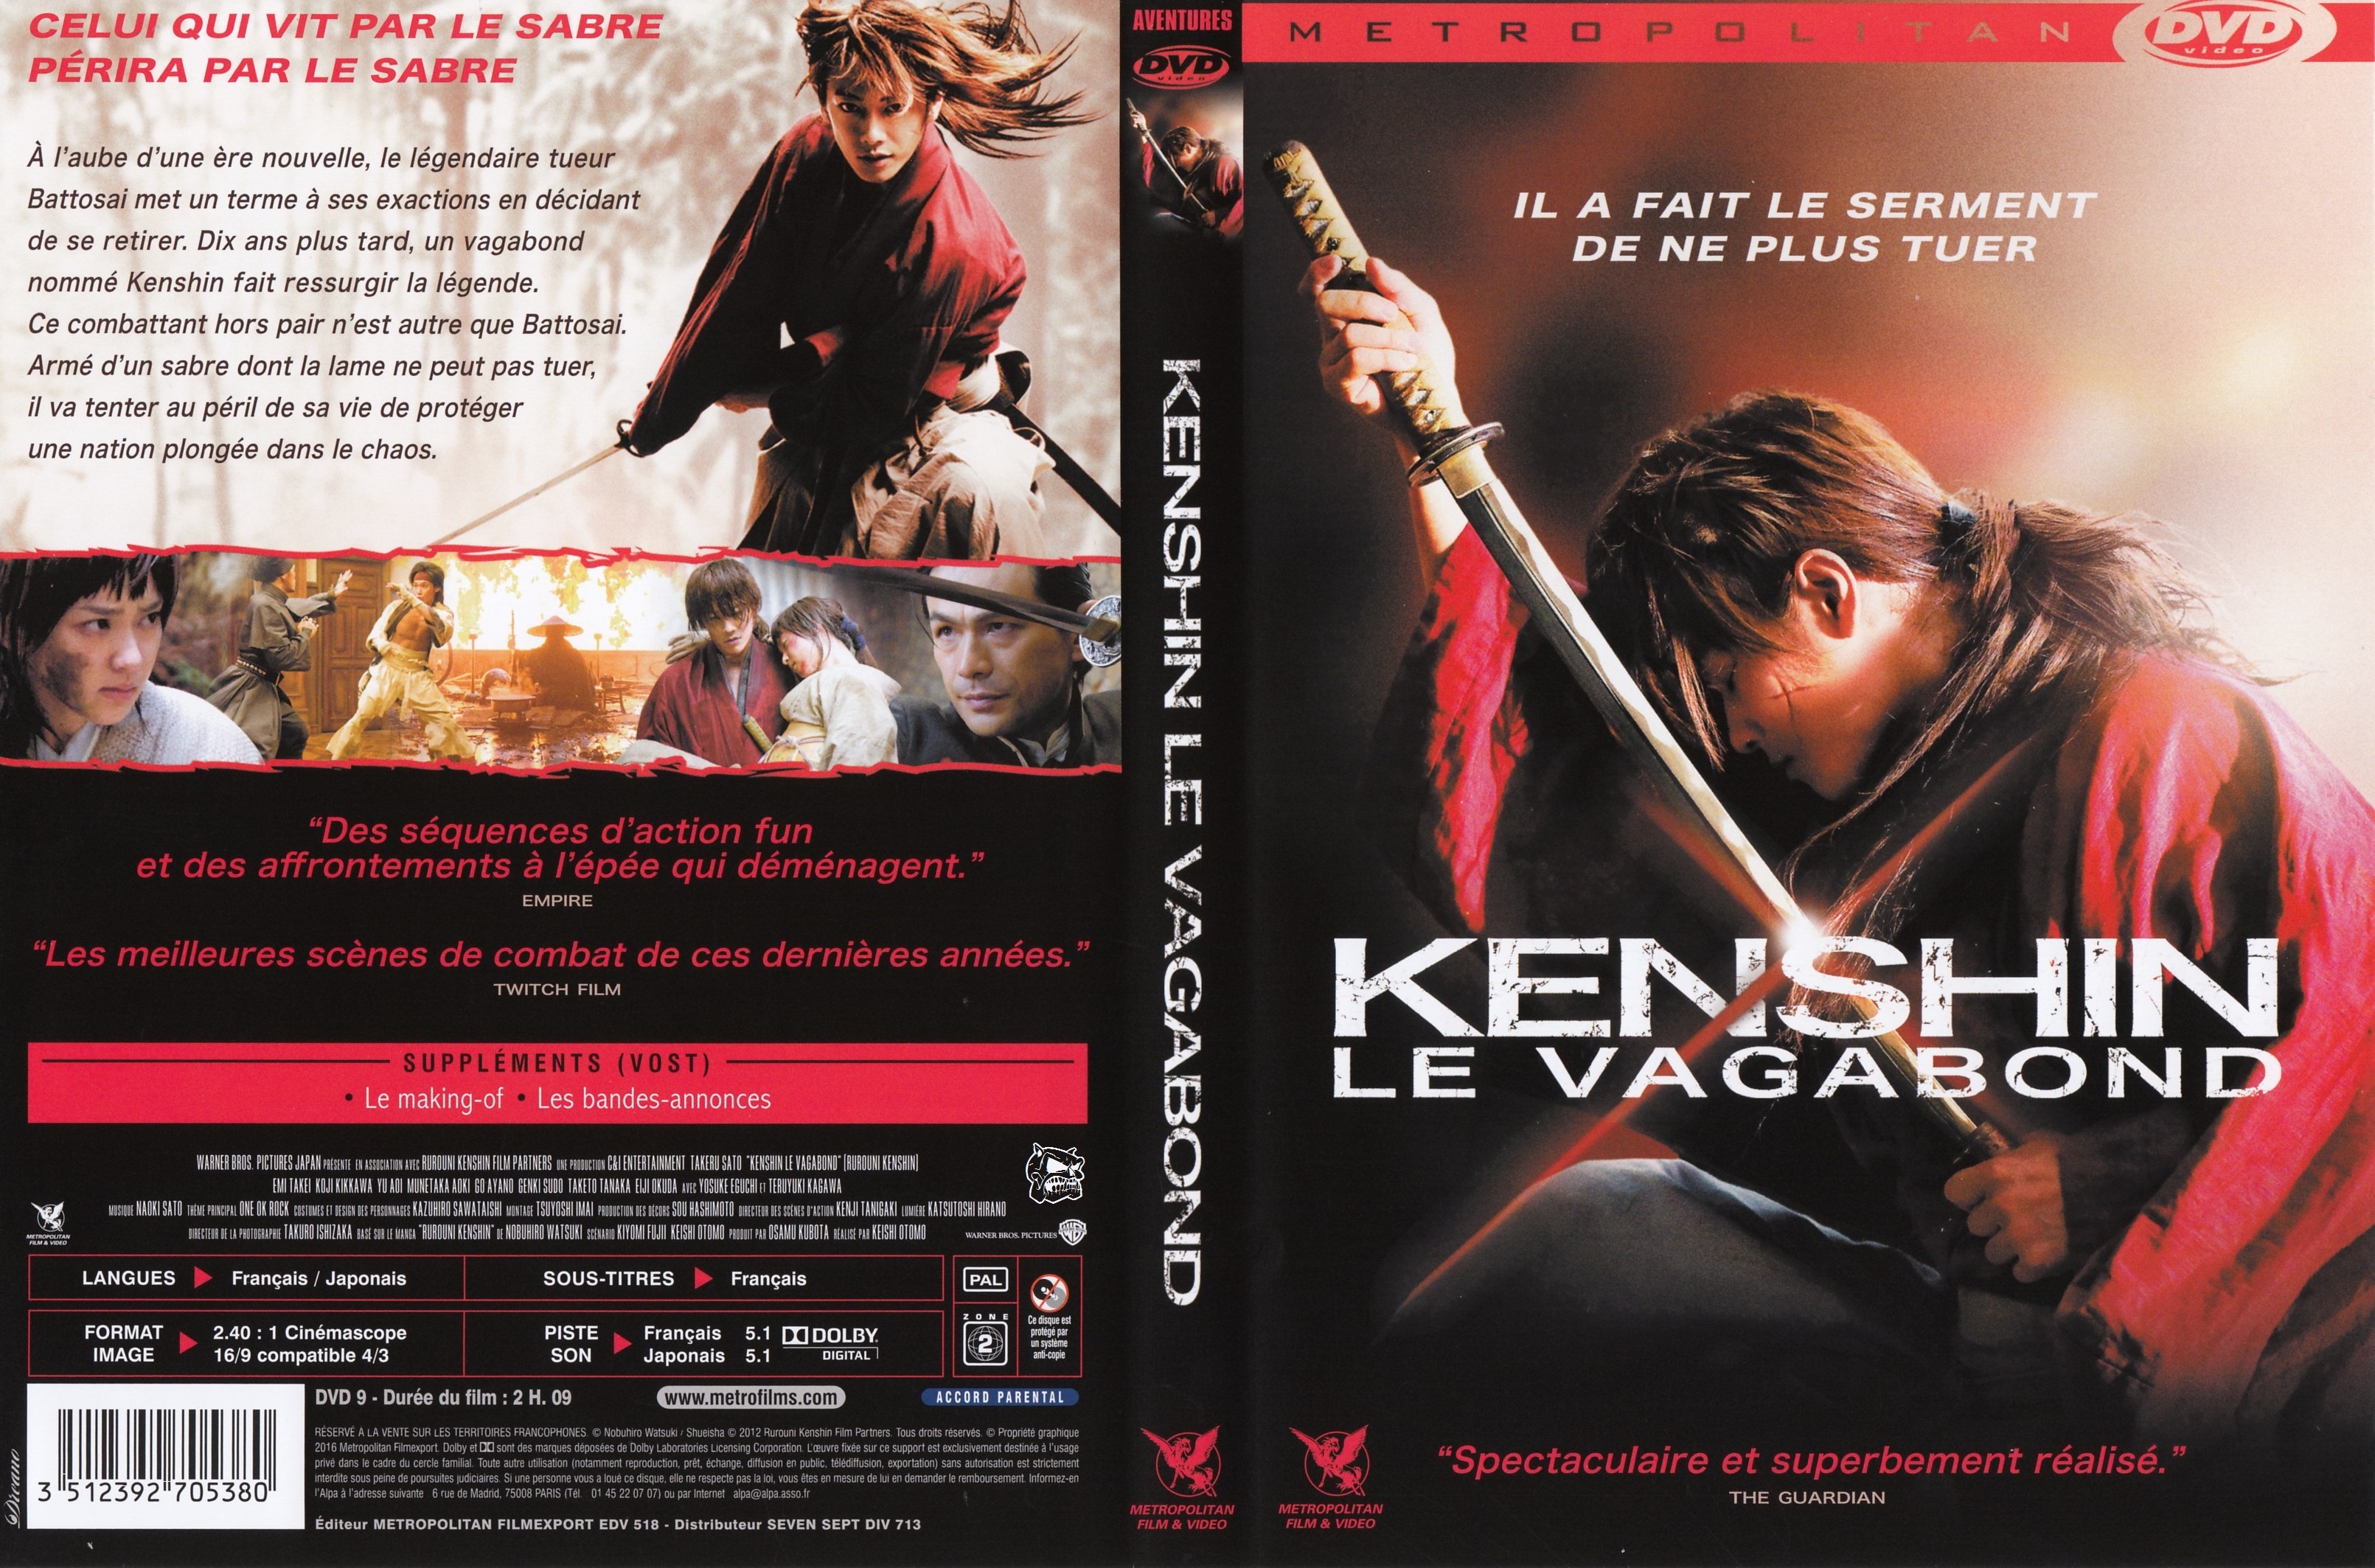 Jaquette DVD Kenshin le Vagabond